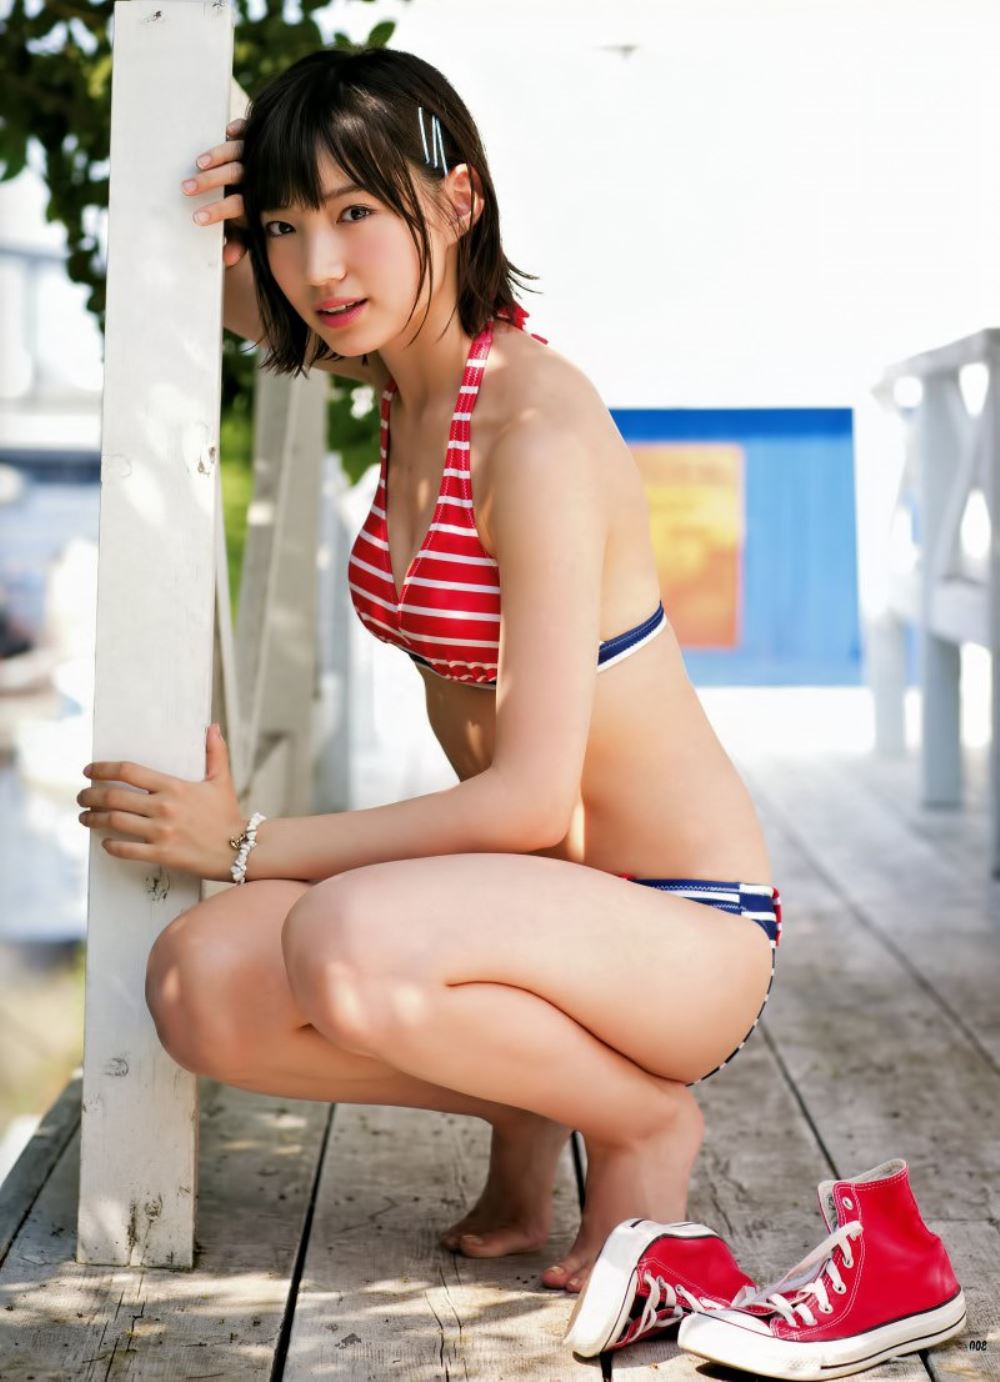 太田夢莉 1万年に1人 可愛い アイドル 水着 画像 90